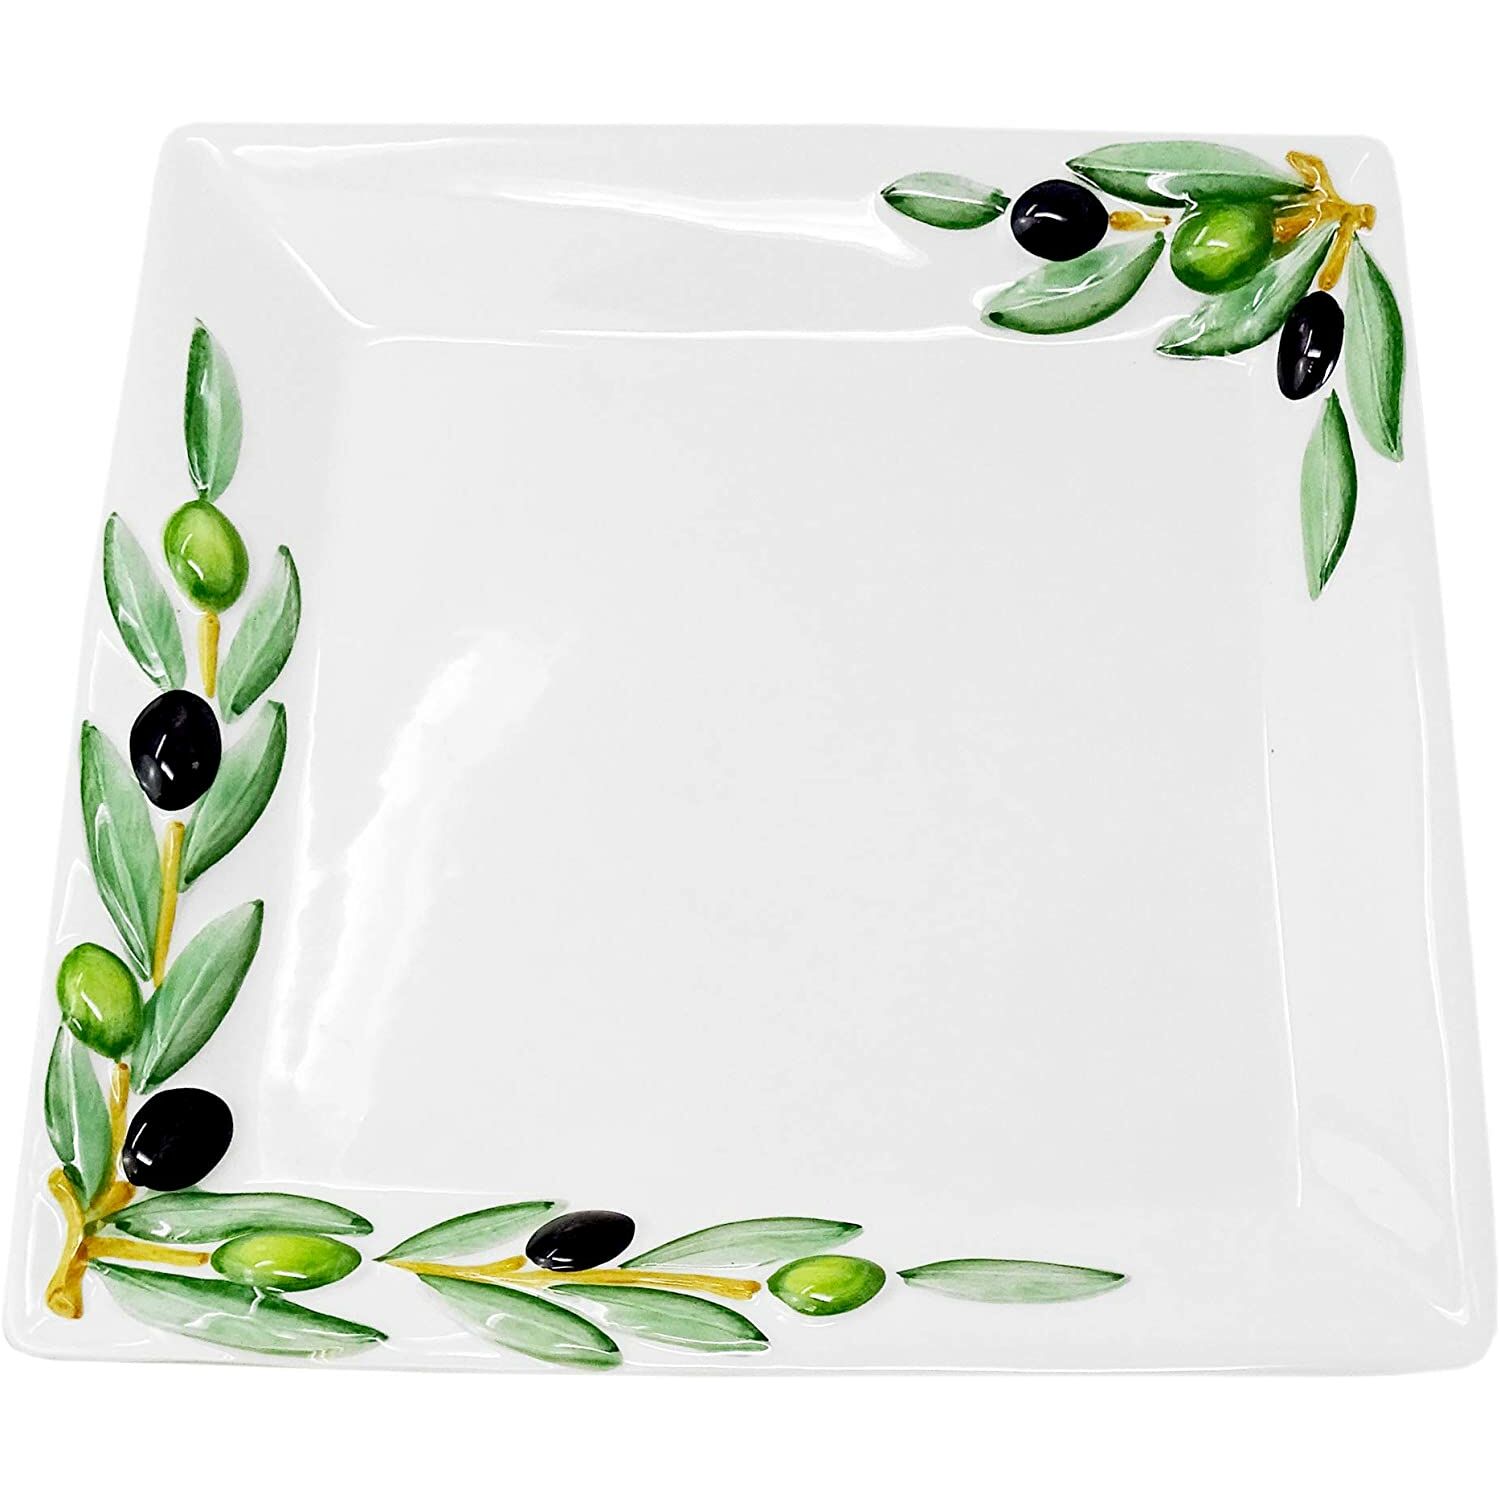 Anrichteplatte 27 Obststeller italienische Olivendesign im Servierplatte Keramik cm Servierteller 27 eckig x